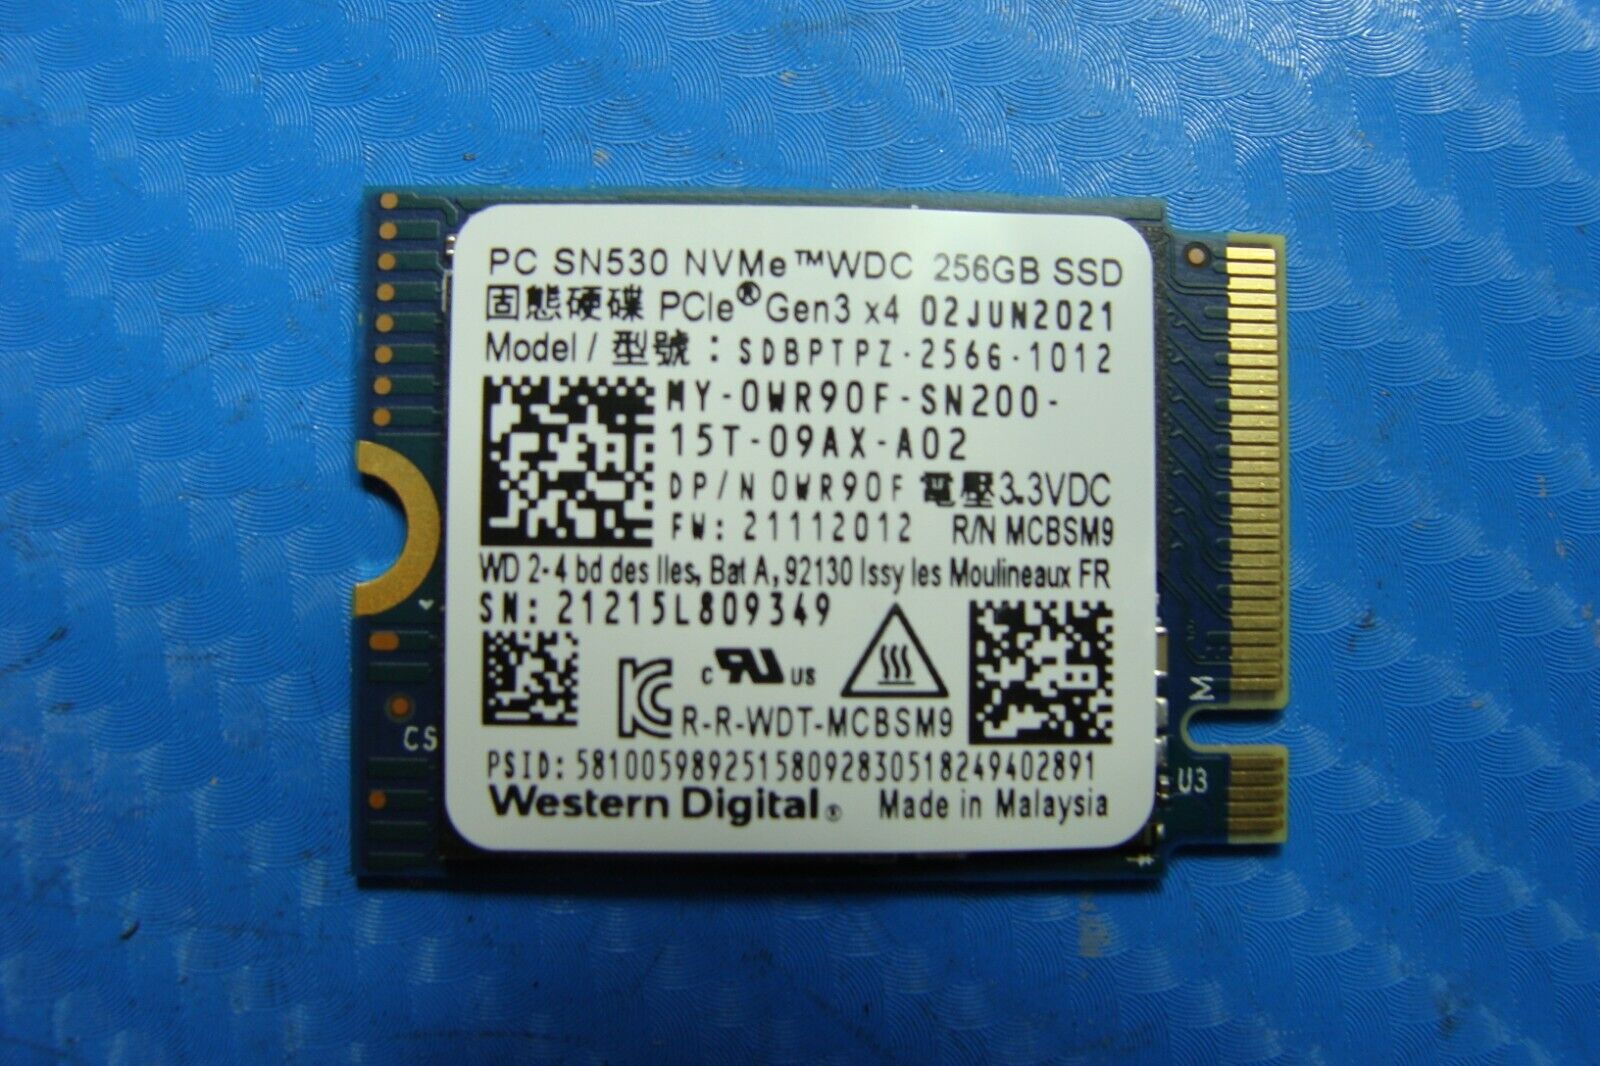 Dell Inspiron 15 3511 Western Digital SN530 256Gb NVMe M.2 SSD sdbptpz-256g-1012